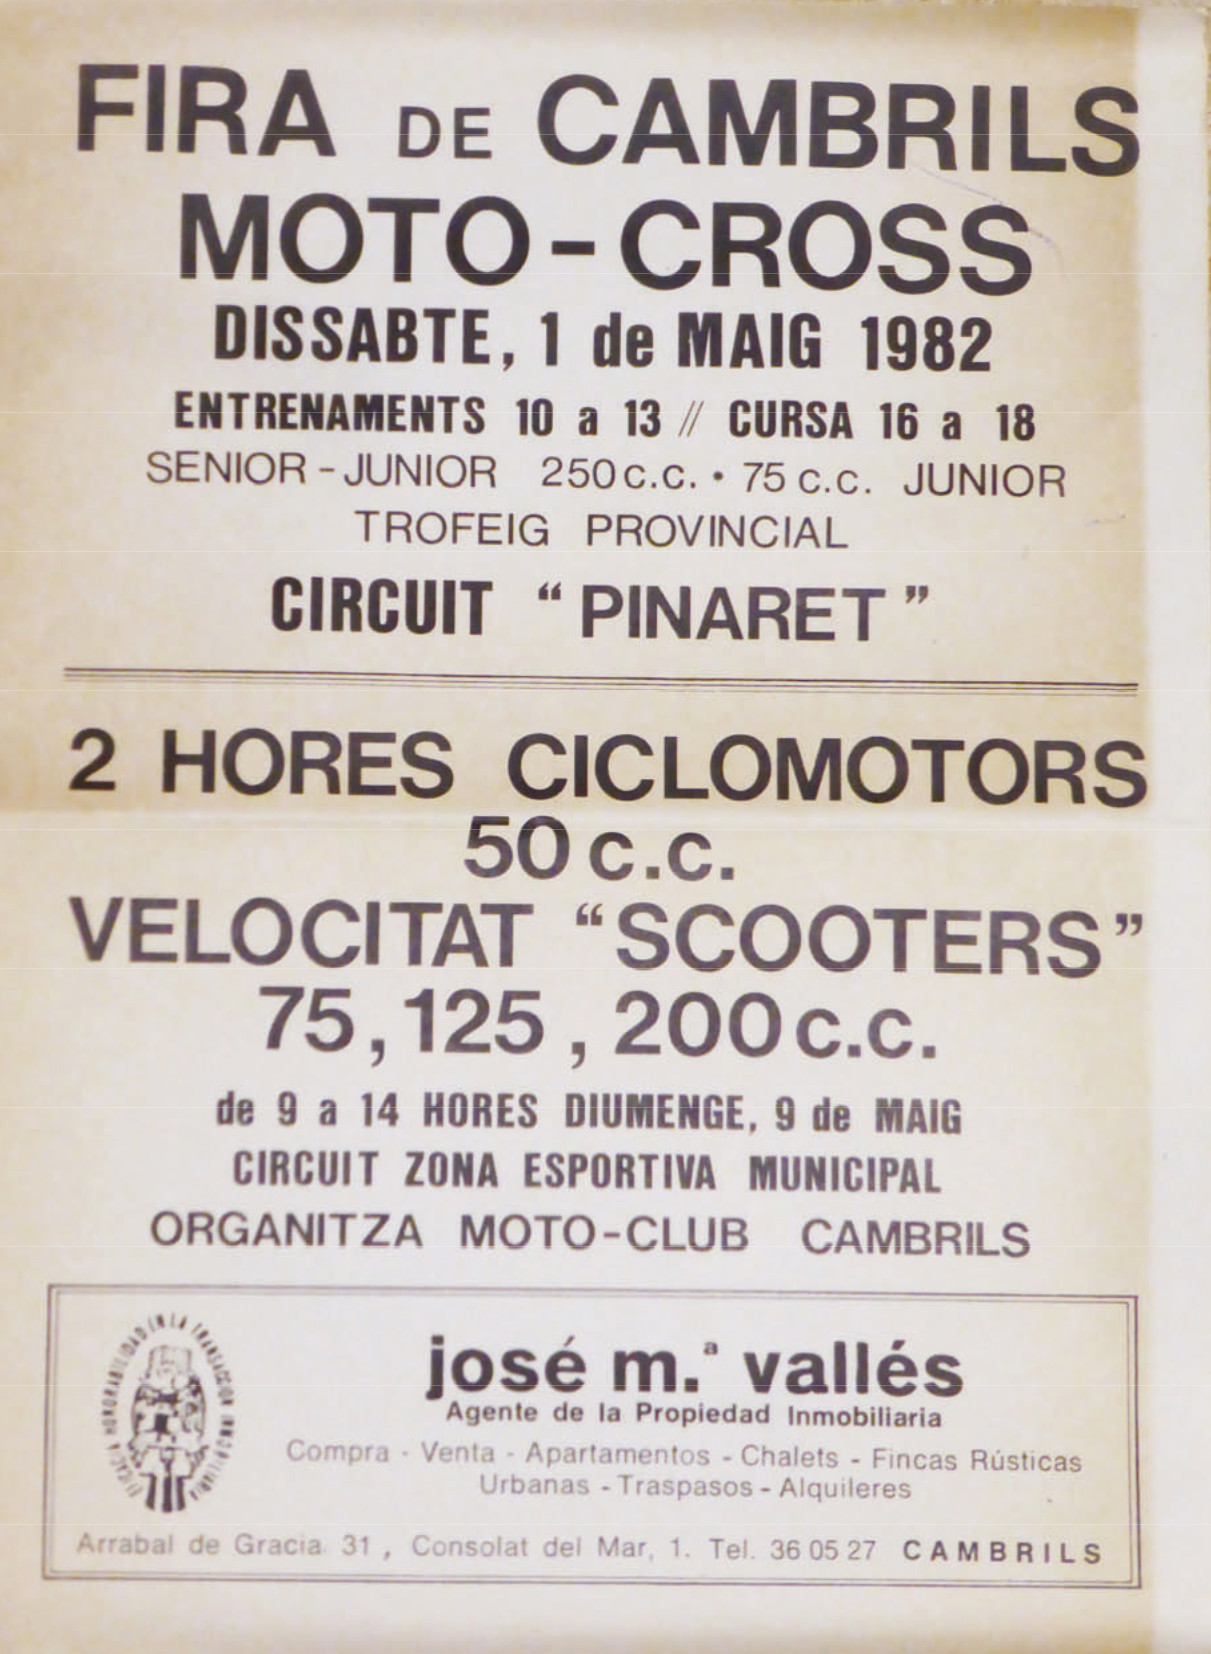 moto cros cambrils 1982